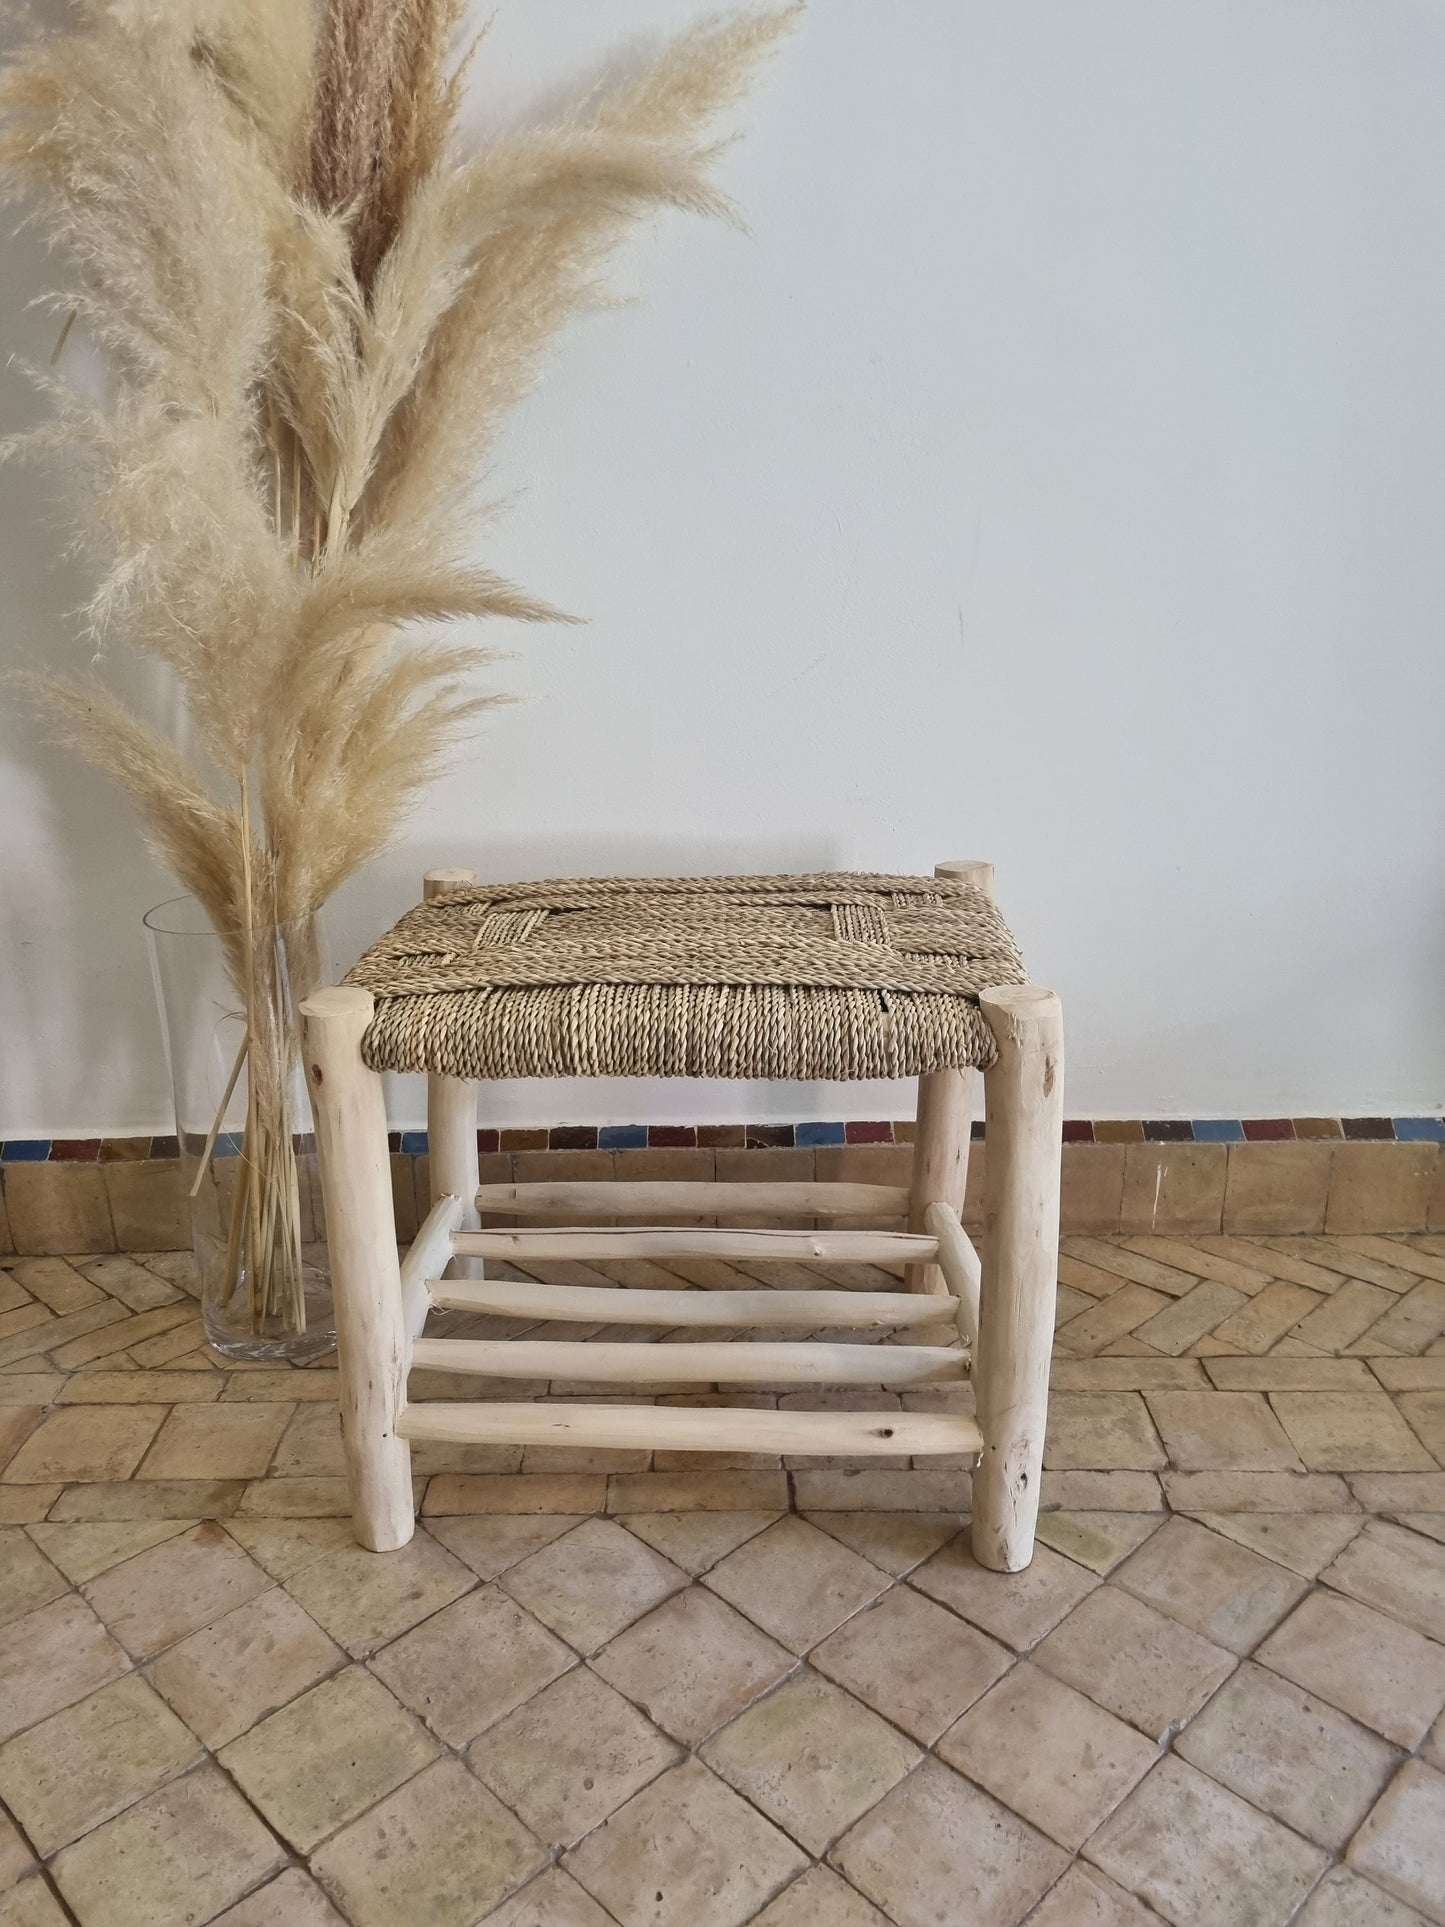 Un meuble en bois massif avec un banc doté d'un tressage naturel, créant une atmosphère accueillante dans un espace